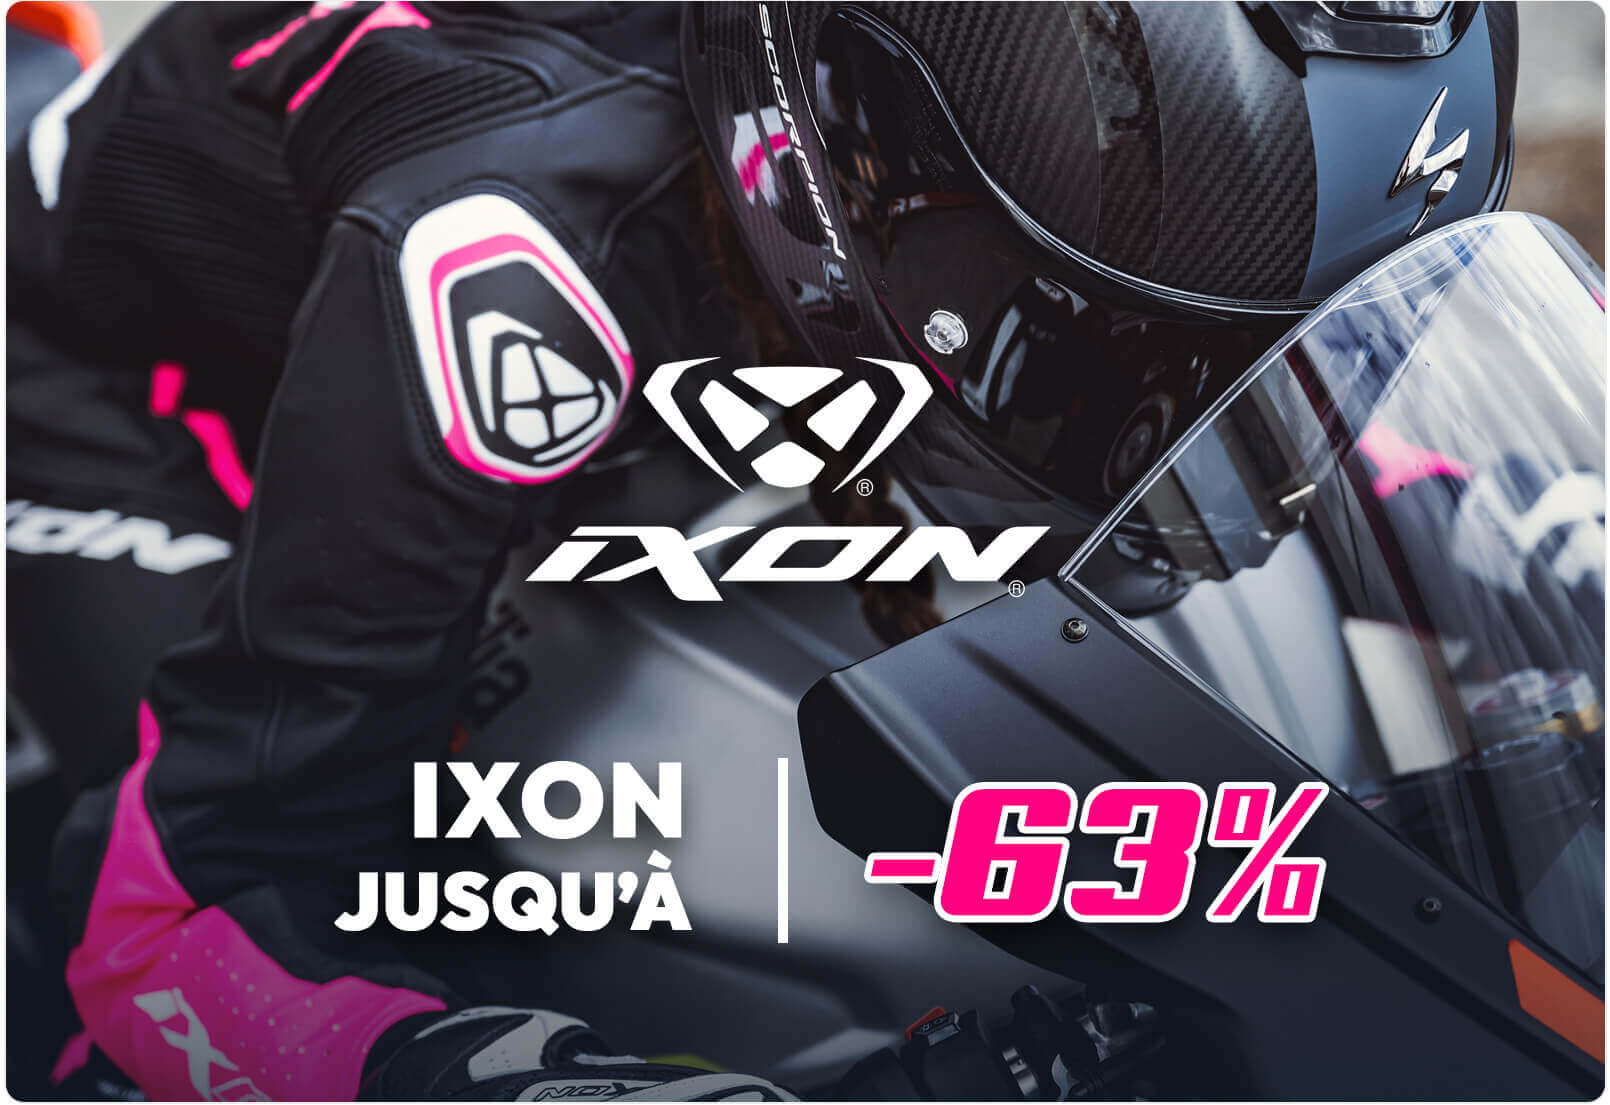 Ixon jusqu'à -63%